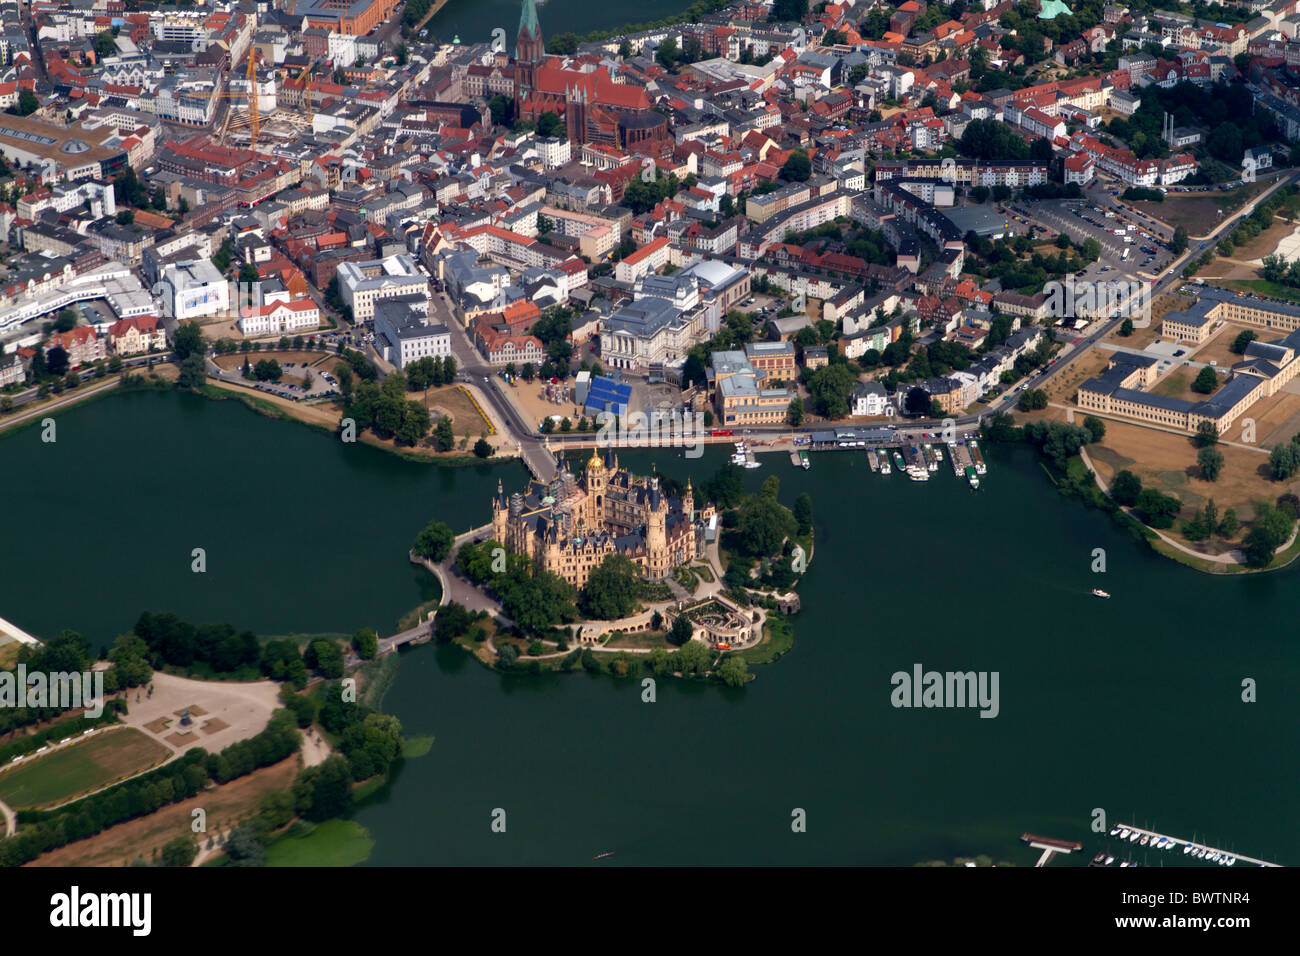 Fotografía aérea del castillo de Schwerin, Mecklenburg-Vorpommern, Alemania Foto de stock